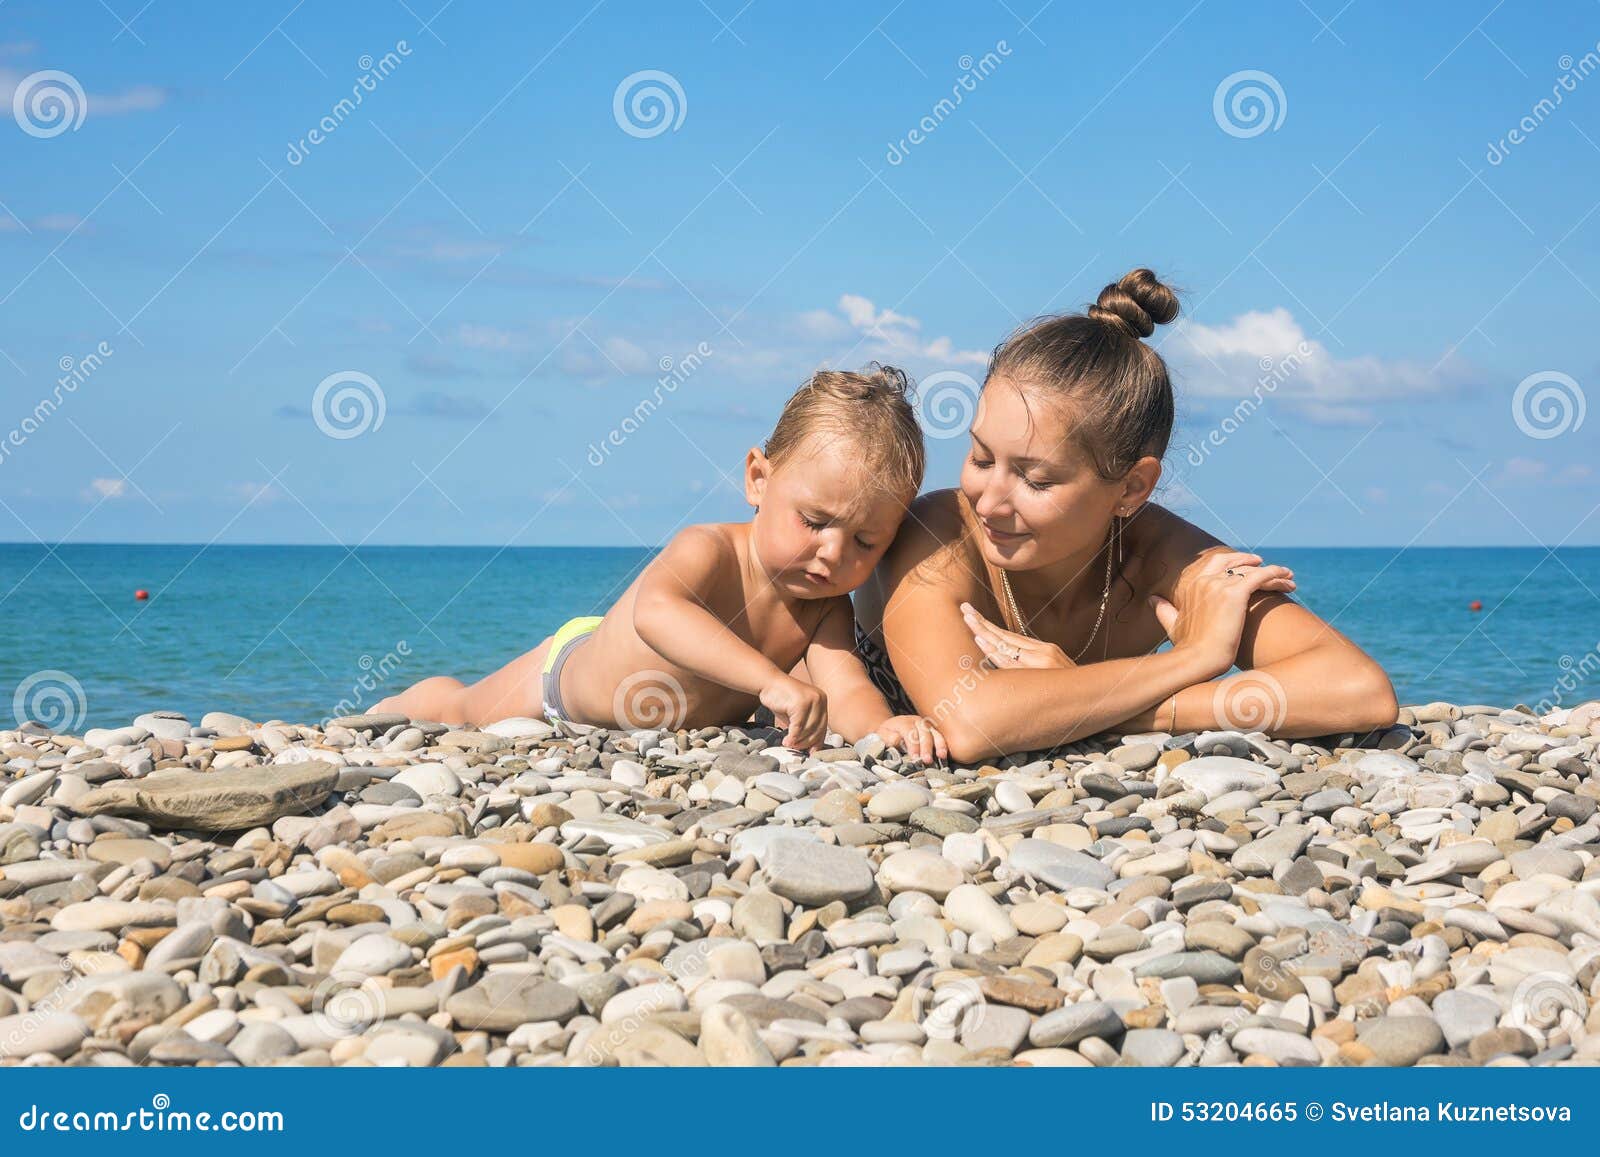 нудистский пляж с голыми детьми фото 37